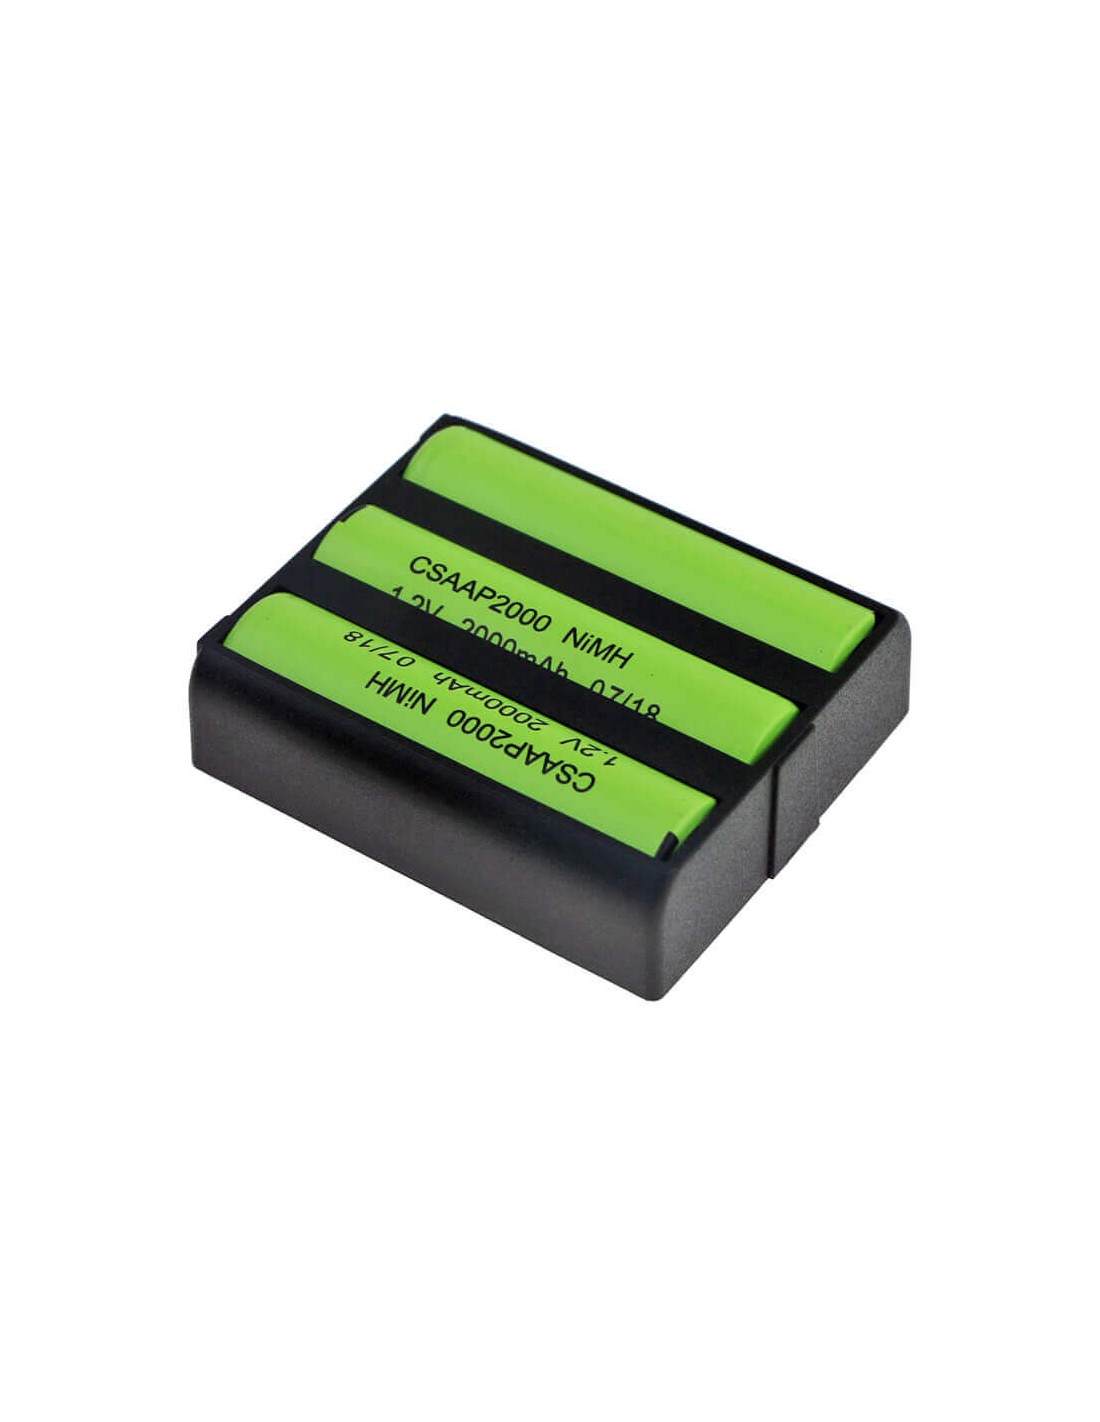 Battery for Sony, Bp-t23, By00h8, Spp-10910, Spp-900, 3.6V, 1200mAh - 4.32Wh